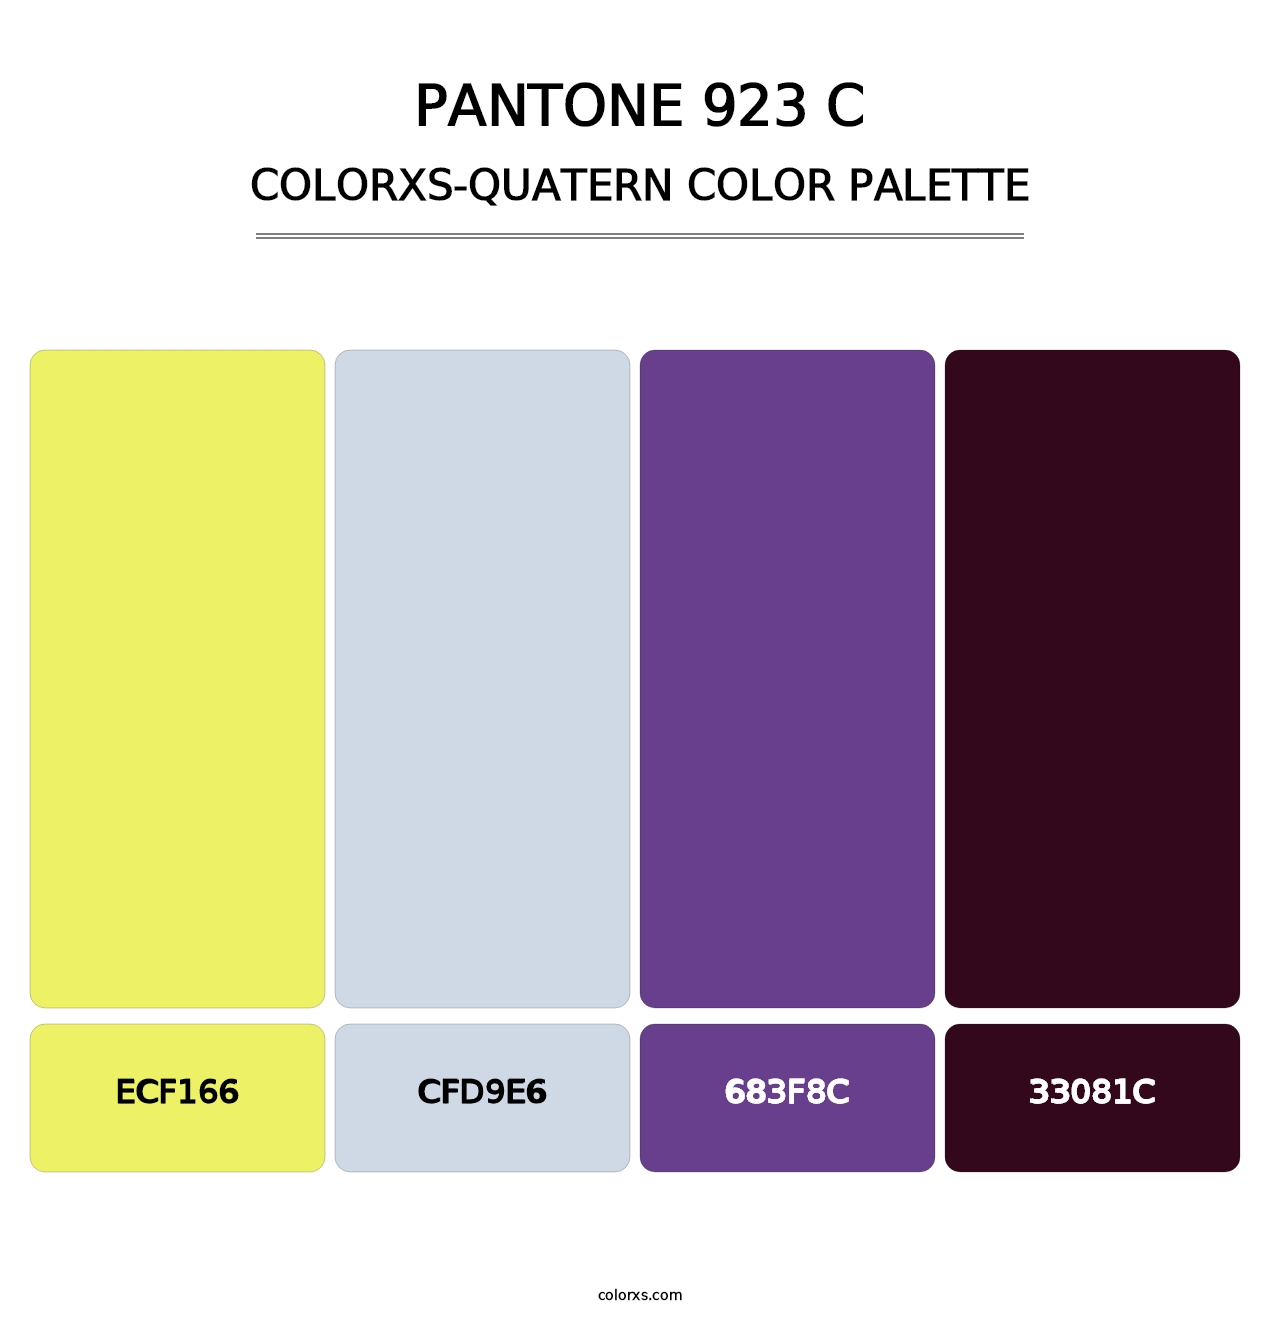 PANTONE 923 C - Colorxs Quatern Palette